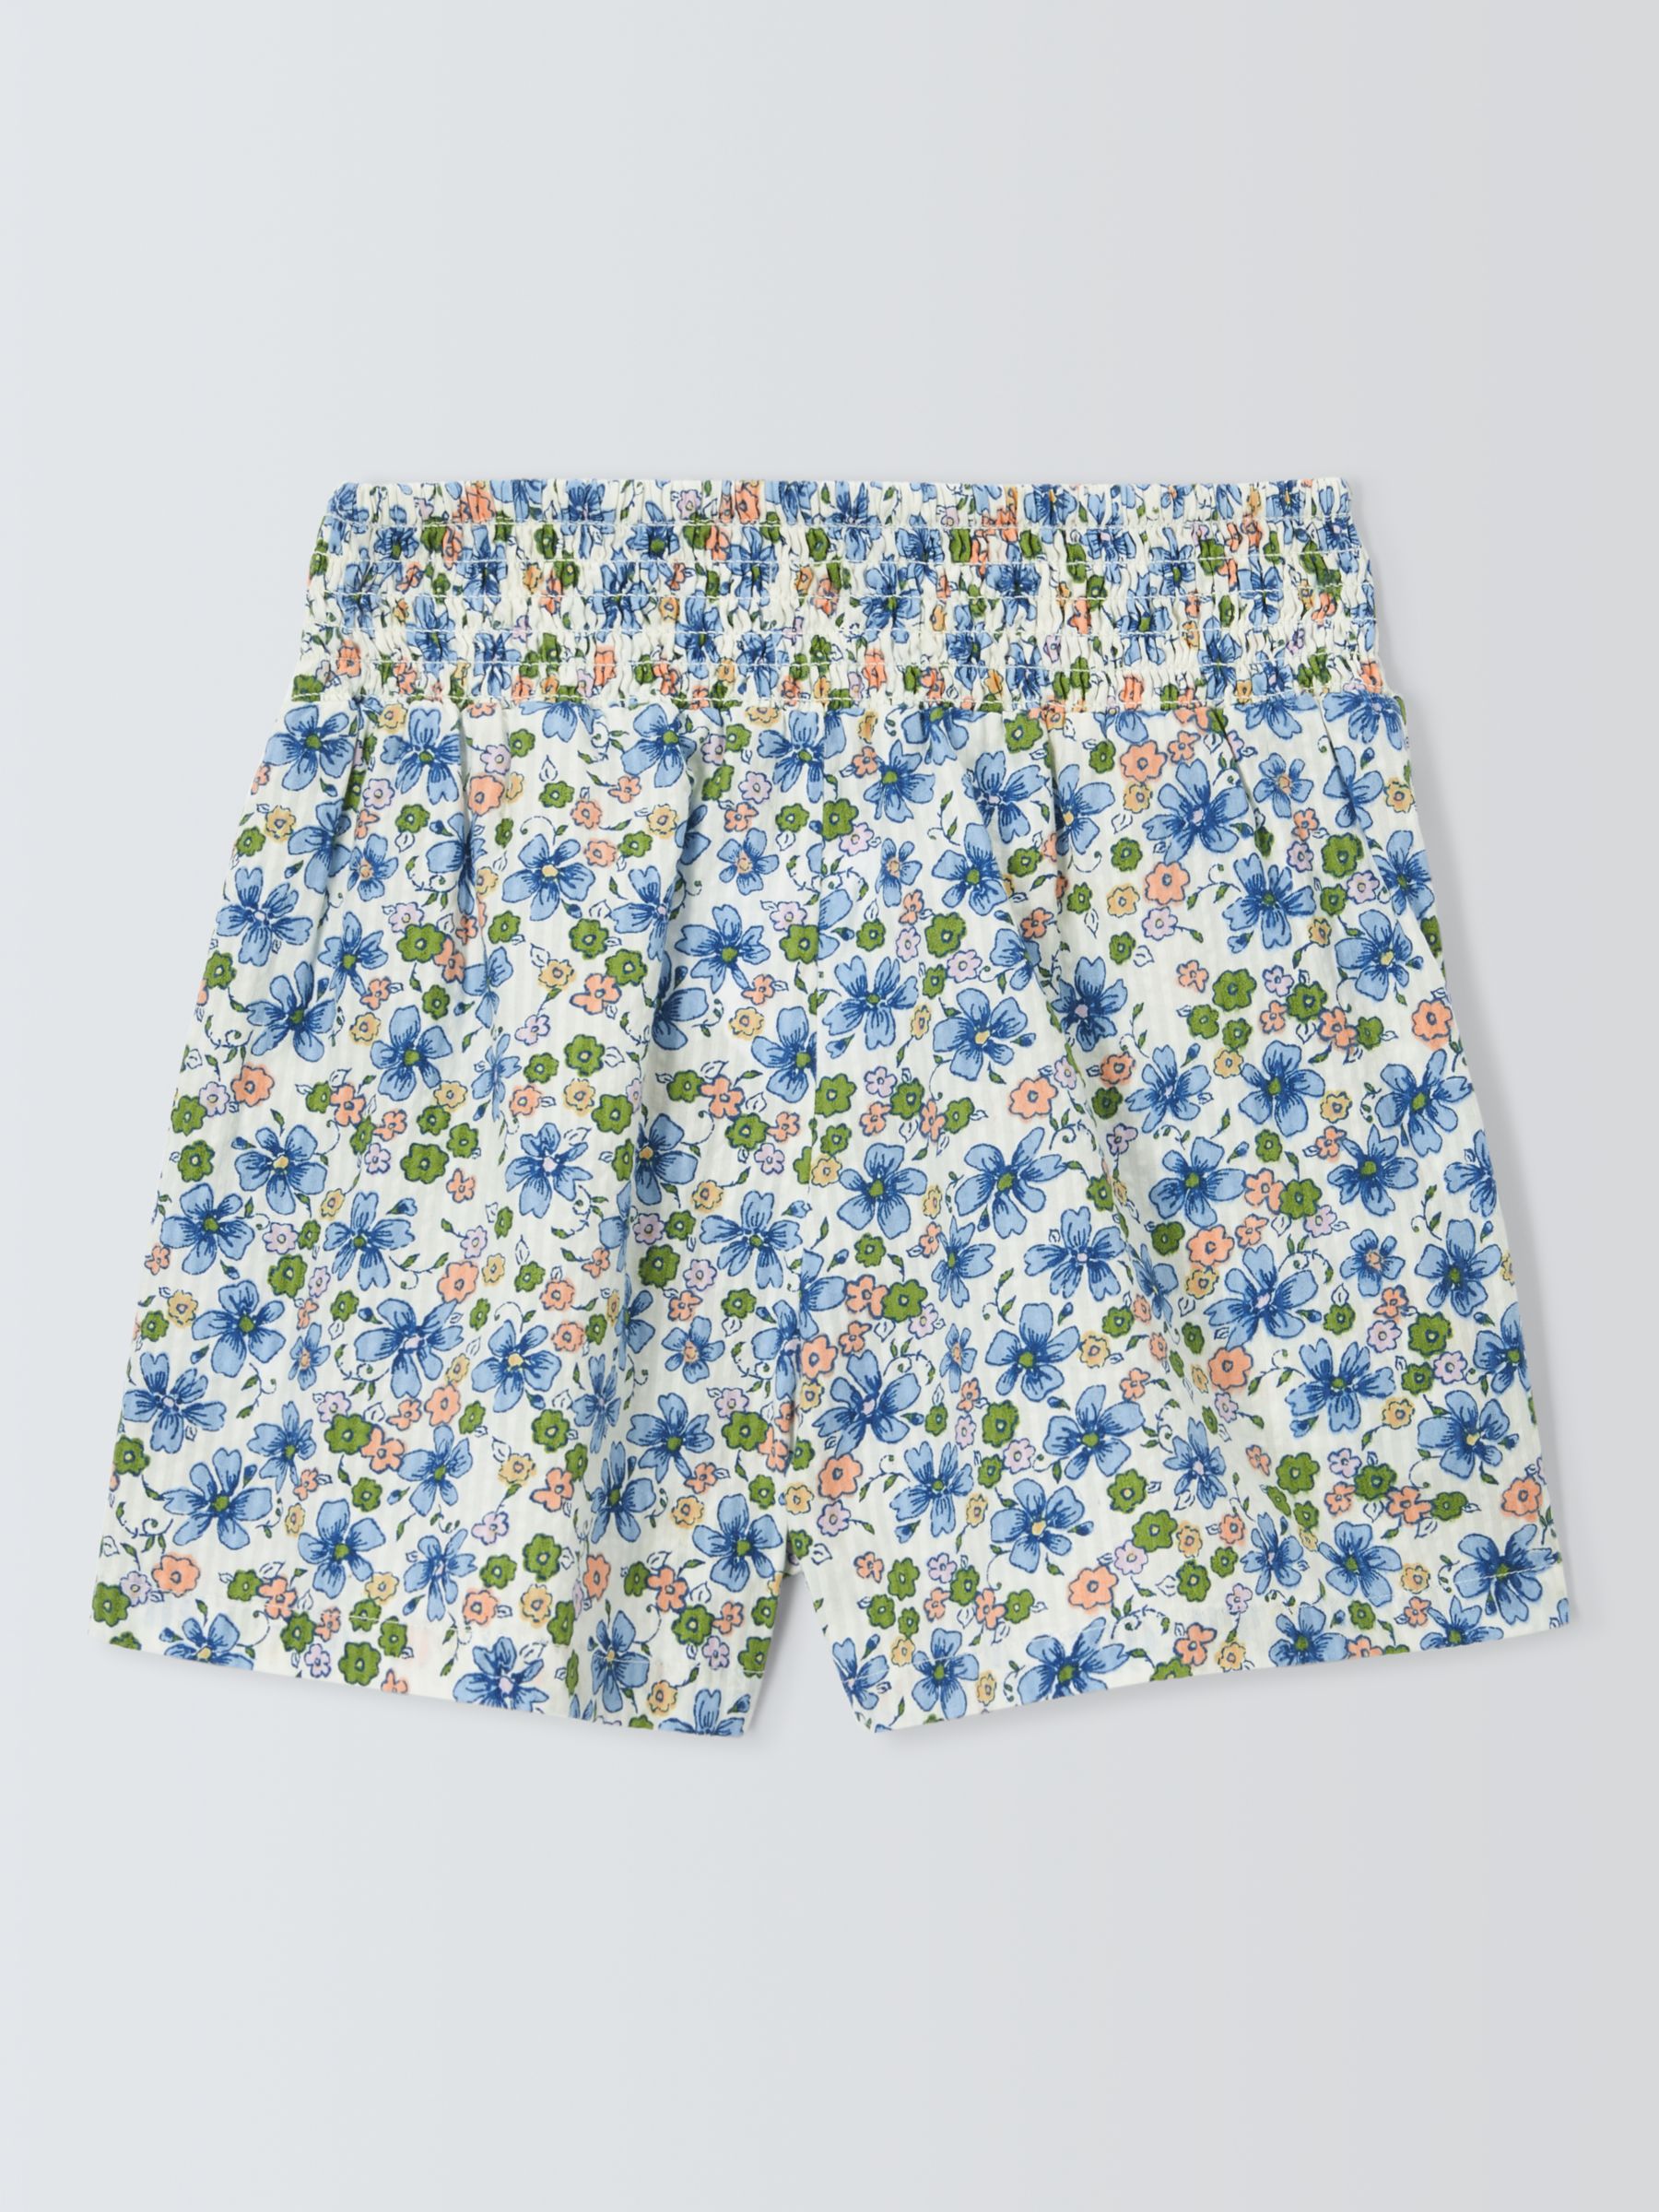 John Lewis Kids' Floral Shorts, Multi, 7 years